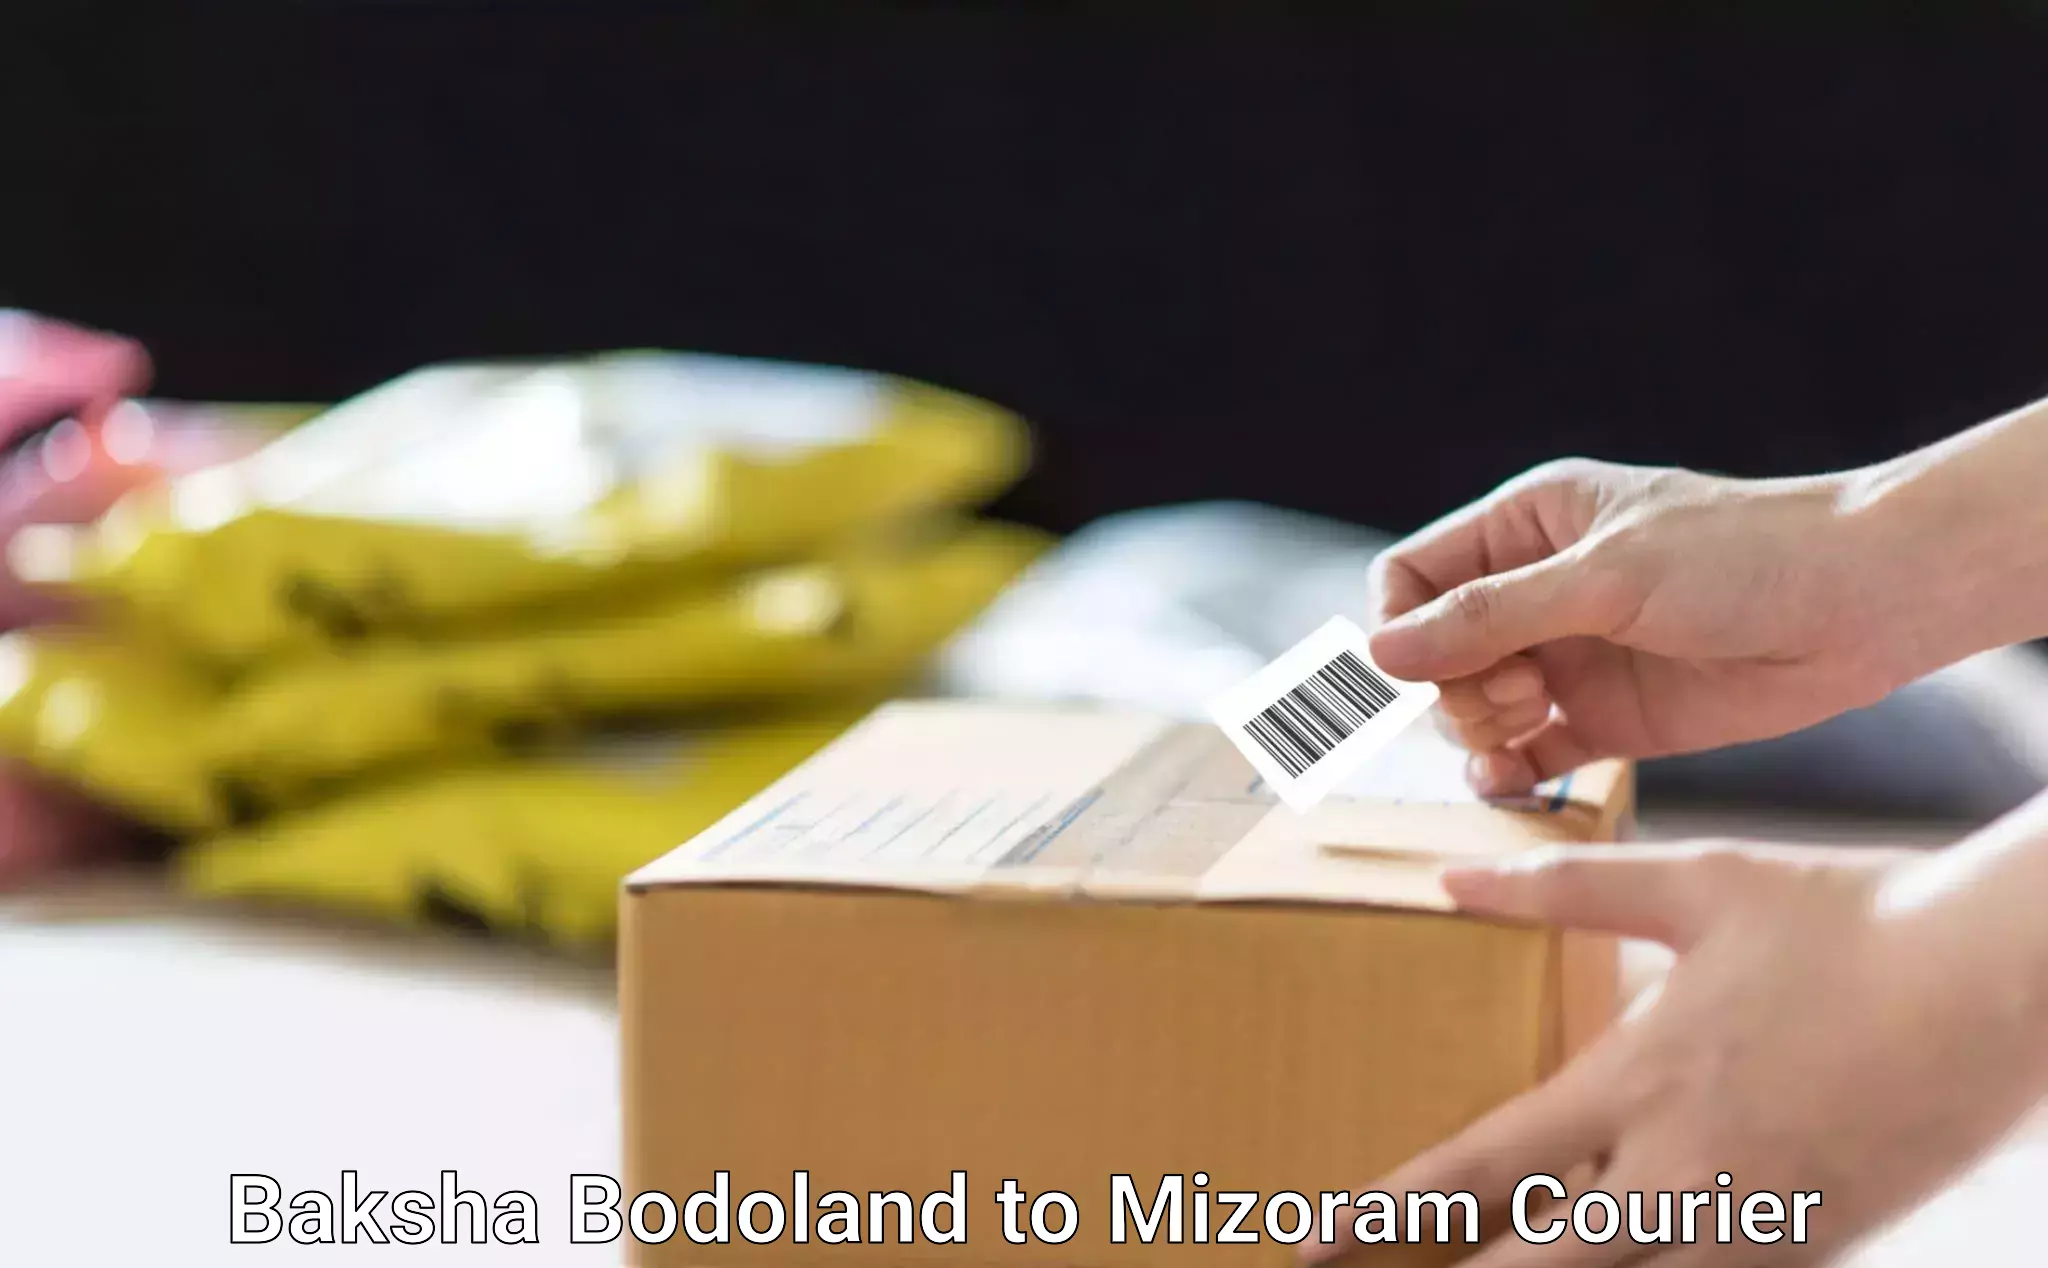 Cargo courier service Baksha Bodoland to Mizoram